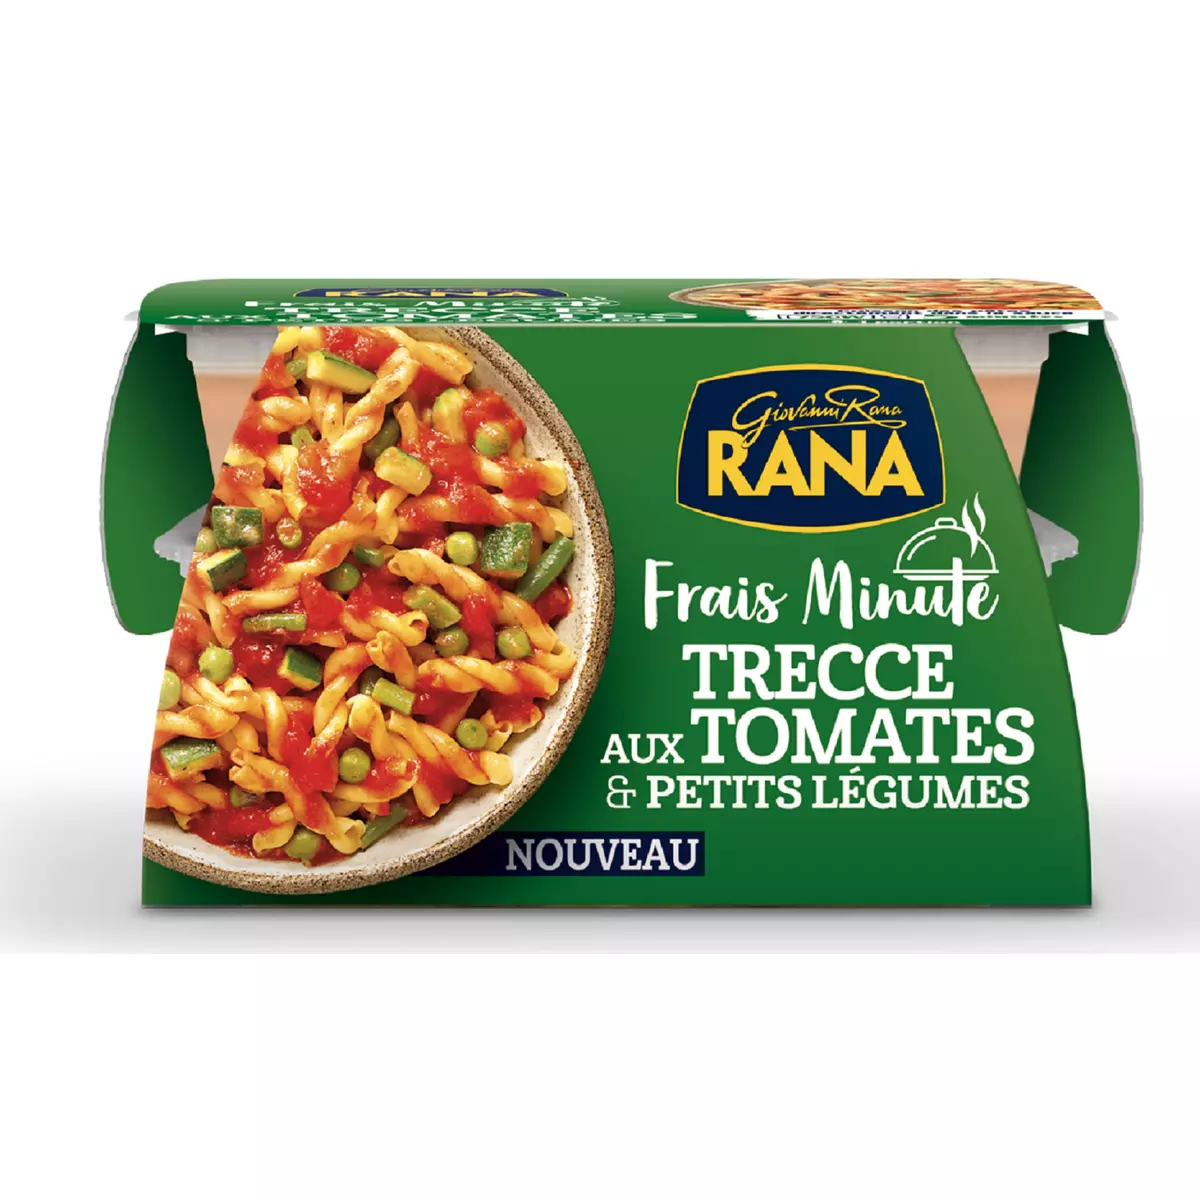 RANA Frais Minunte Trecce aux tomates et petits légumes 1 portion 350g